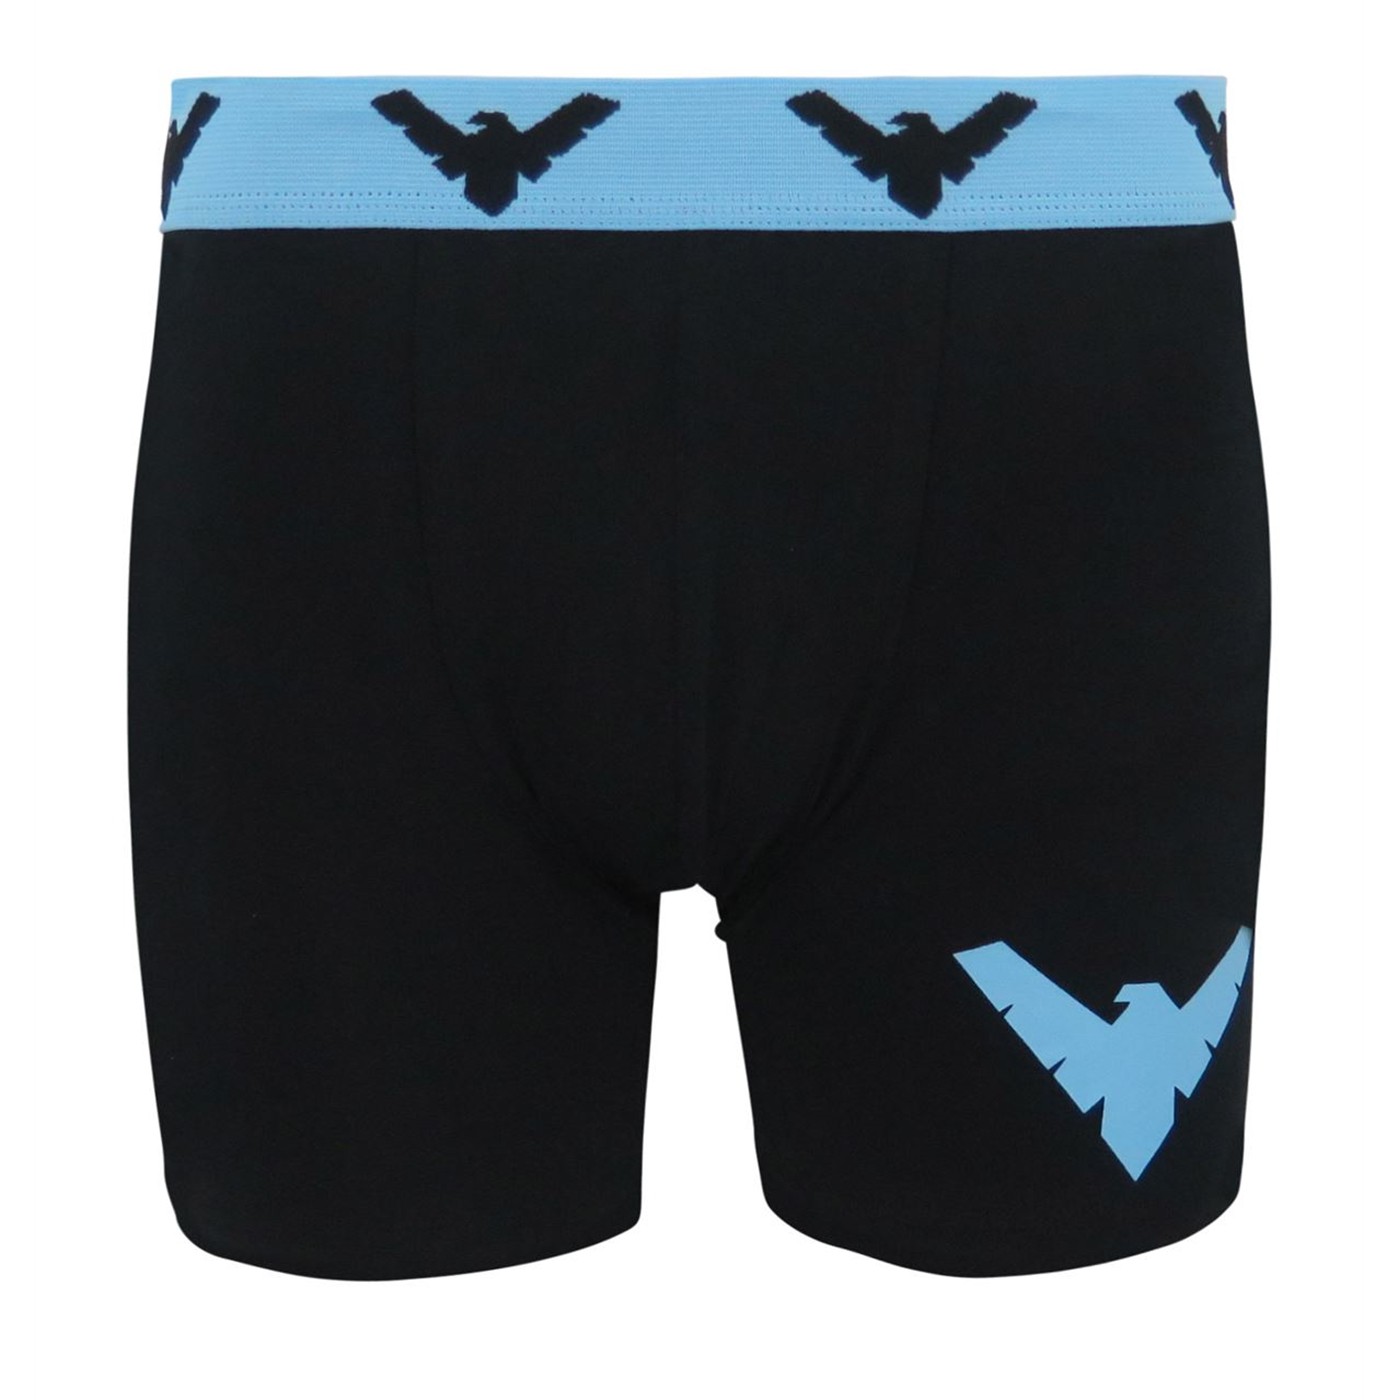 Nightwing Symbol Men's Underwear Fashion Boxer Briefs